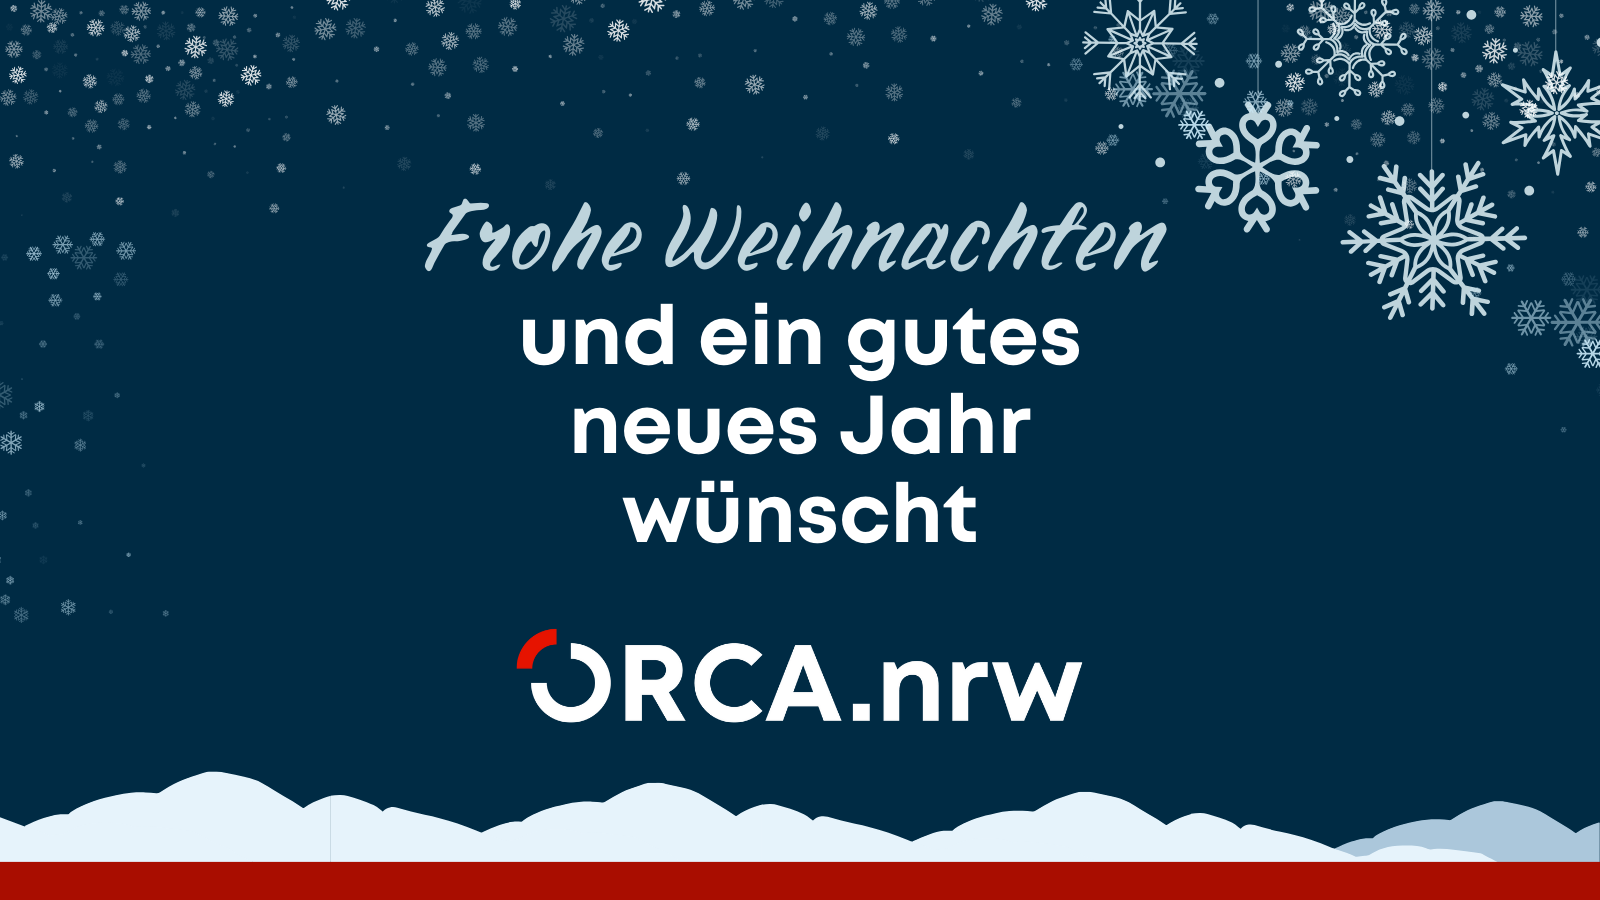 Frohe Weihnachten und ein gutes neues Jahr wünscht ORCA.nrw